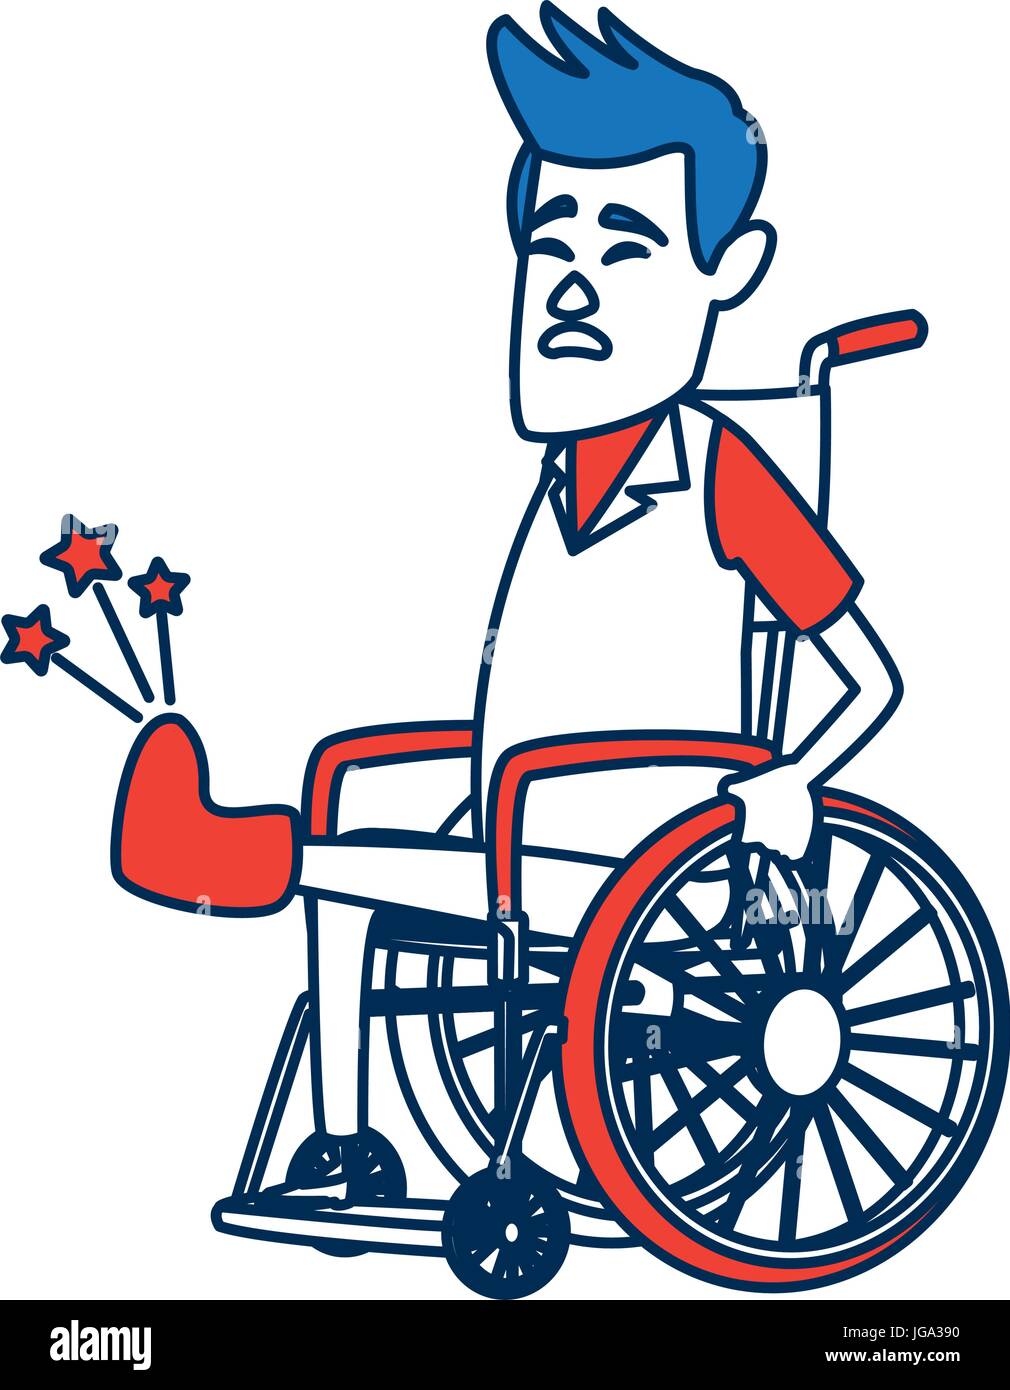 Un homme en fauteuil roulant avec l'os cassé. Un style contemporain. Design plat Vector illustration isolé sur fond blanc. Disposition verticale. Illustration de Vecteur